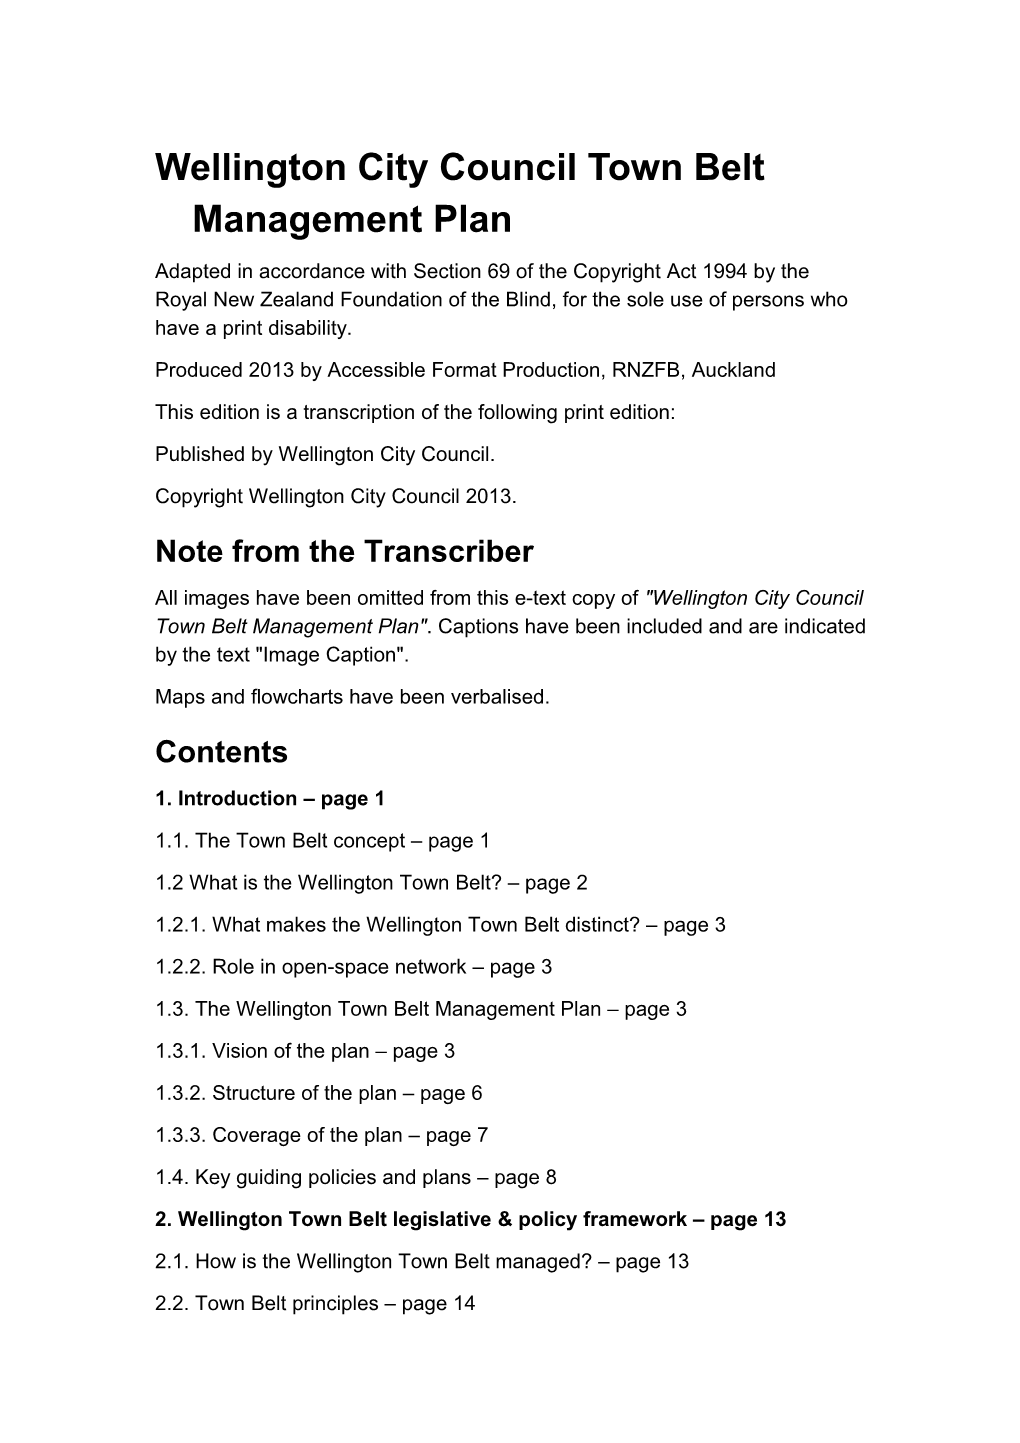 Wellington Town Belt Management Plan (Accessible Word Version)